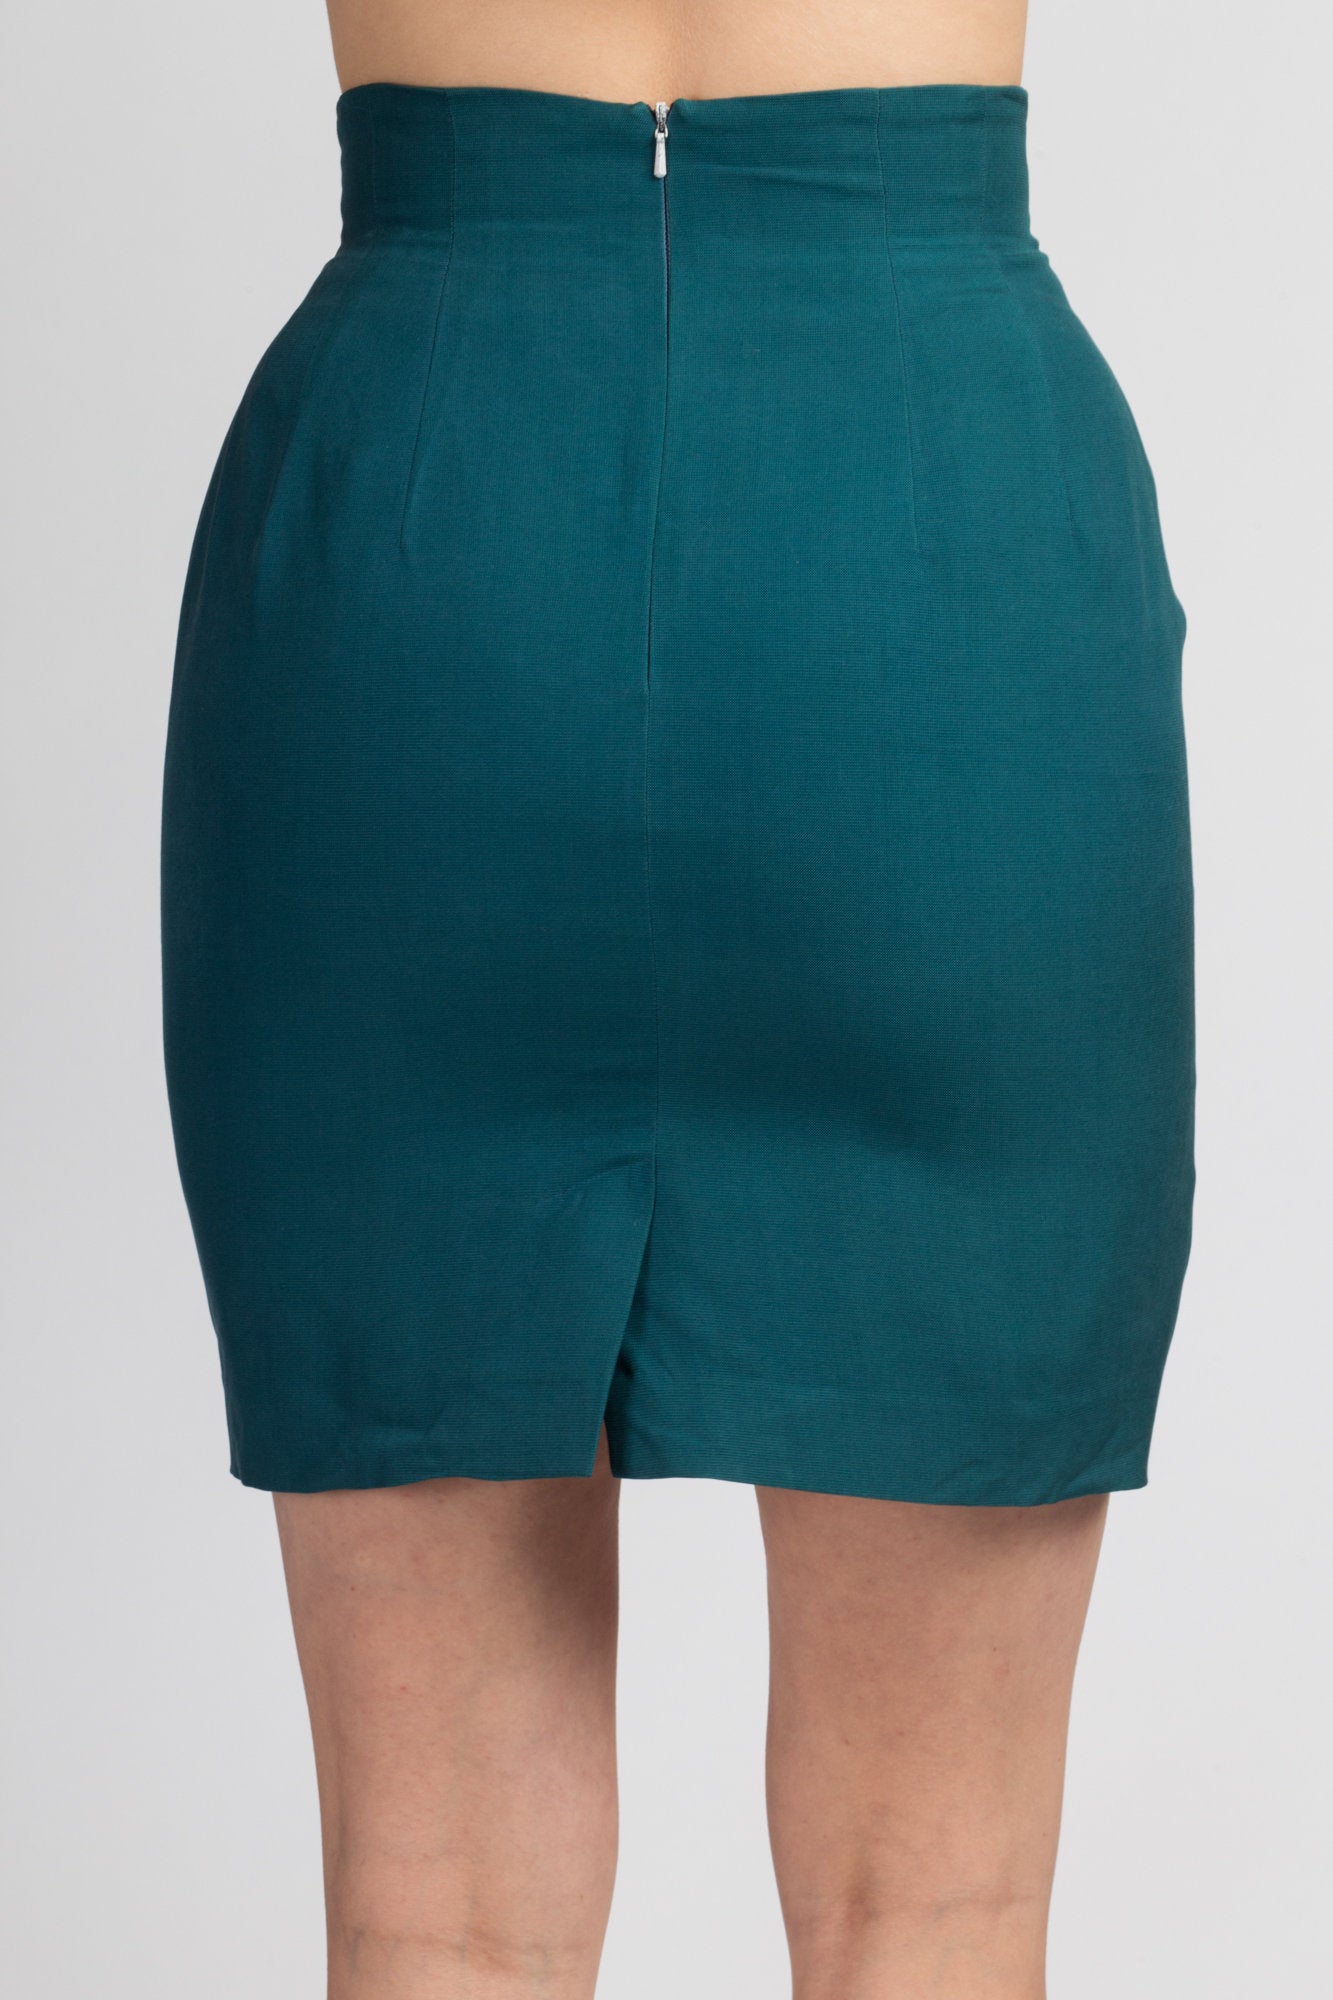 90s Jade Green Silk Mini Skirt - Small